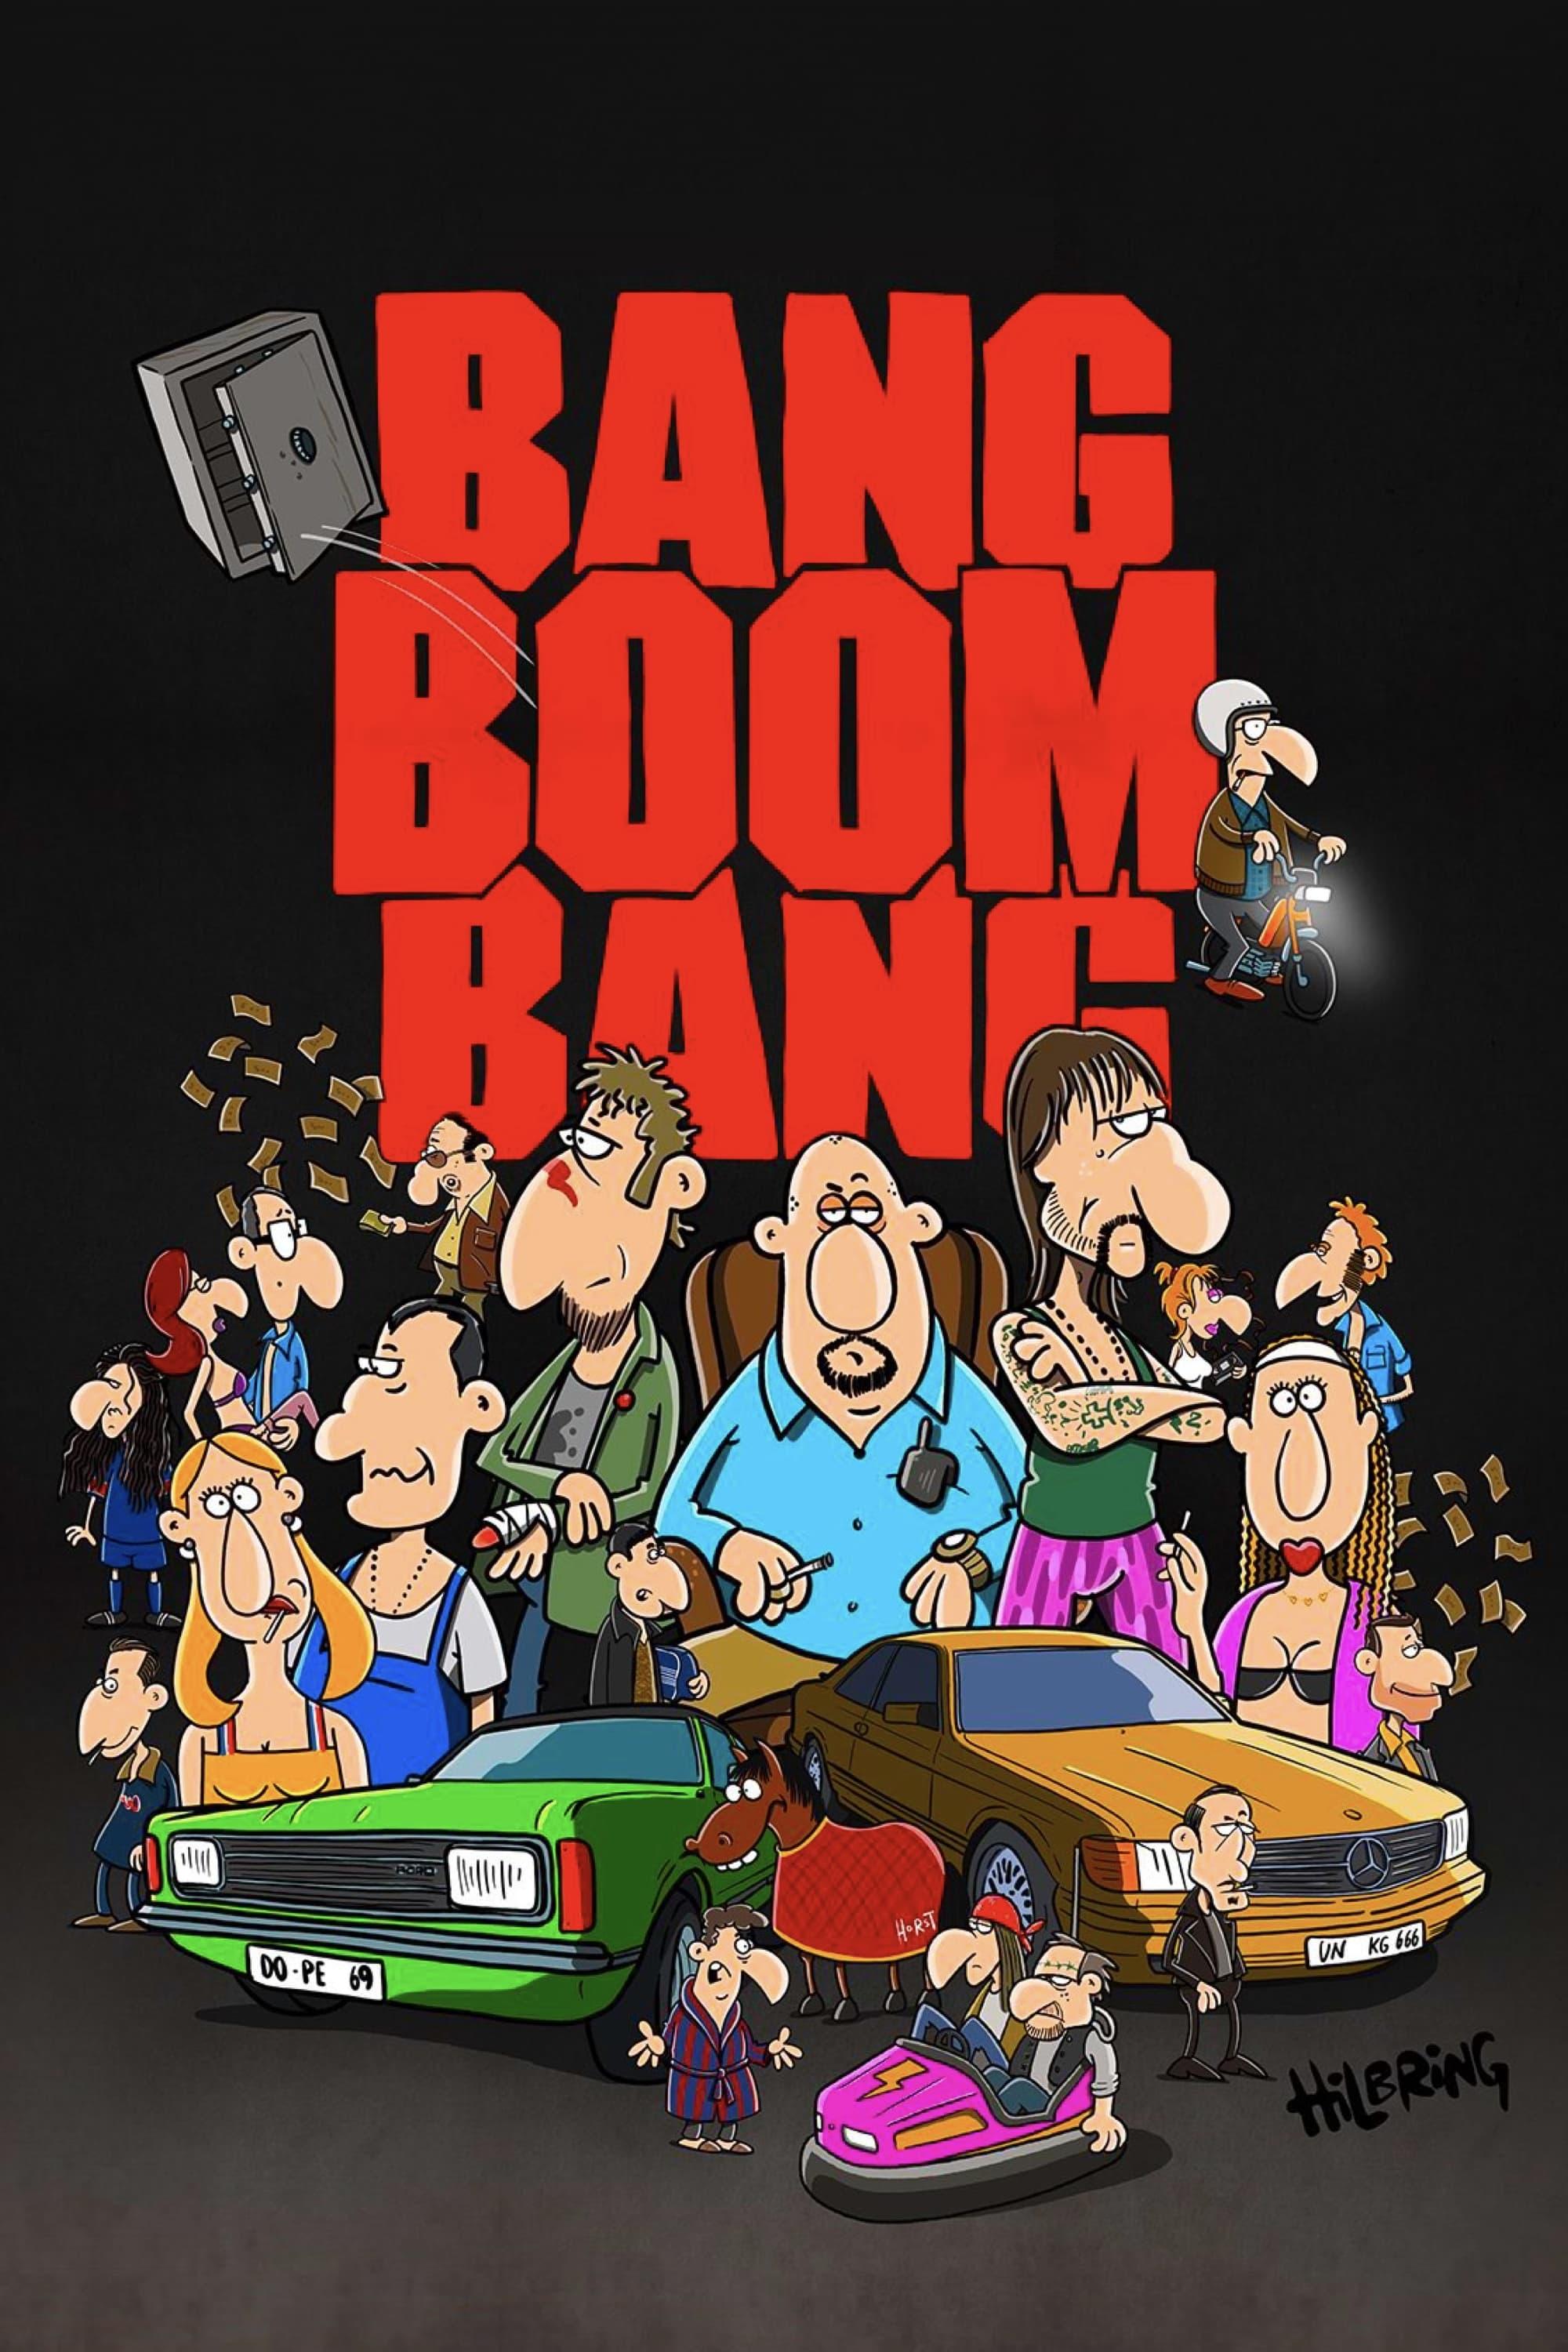 Bang, Boom, Bang poster